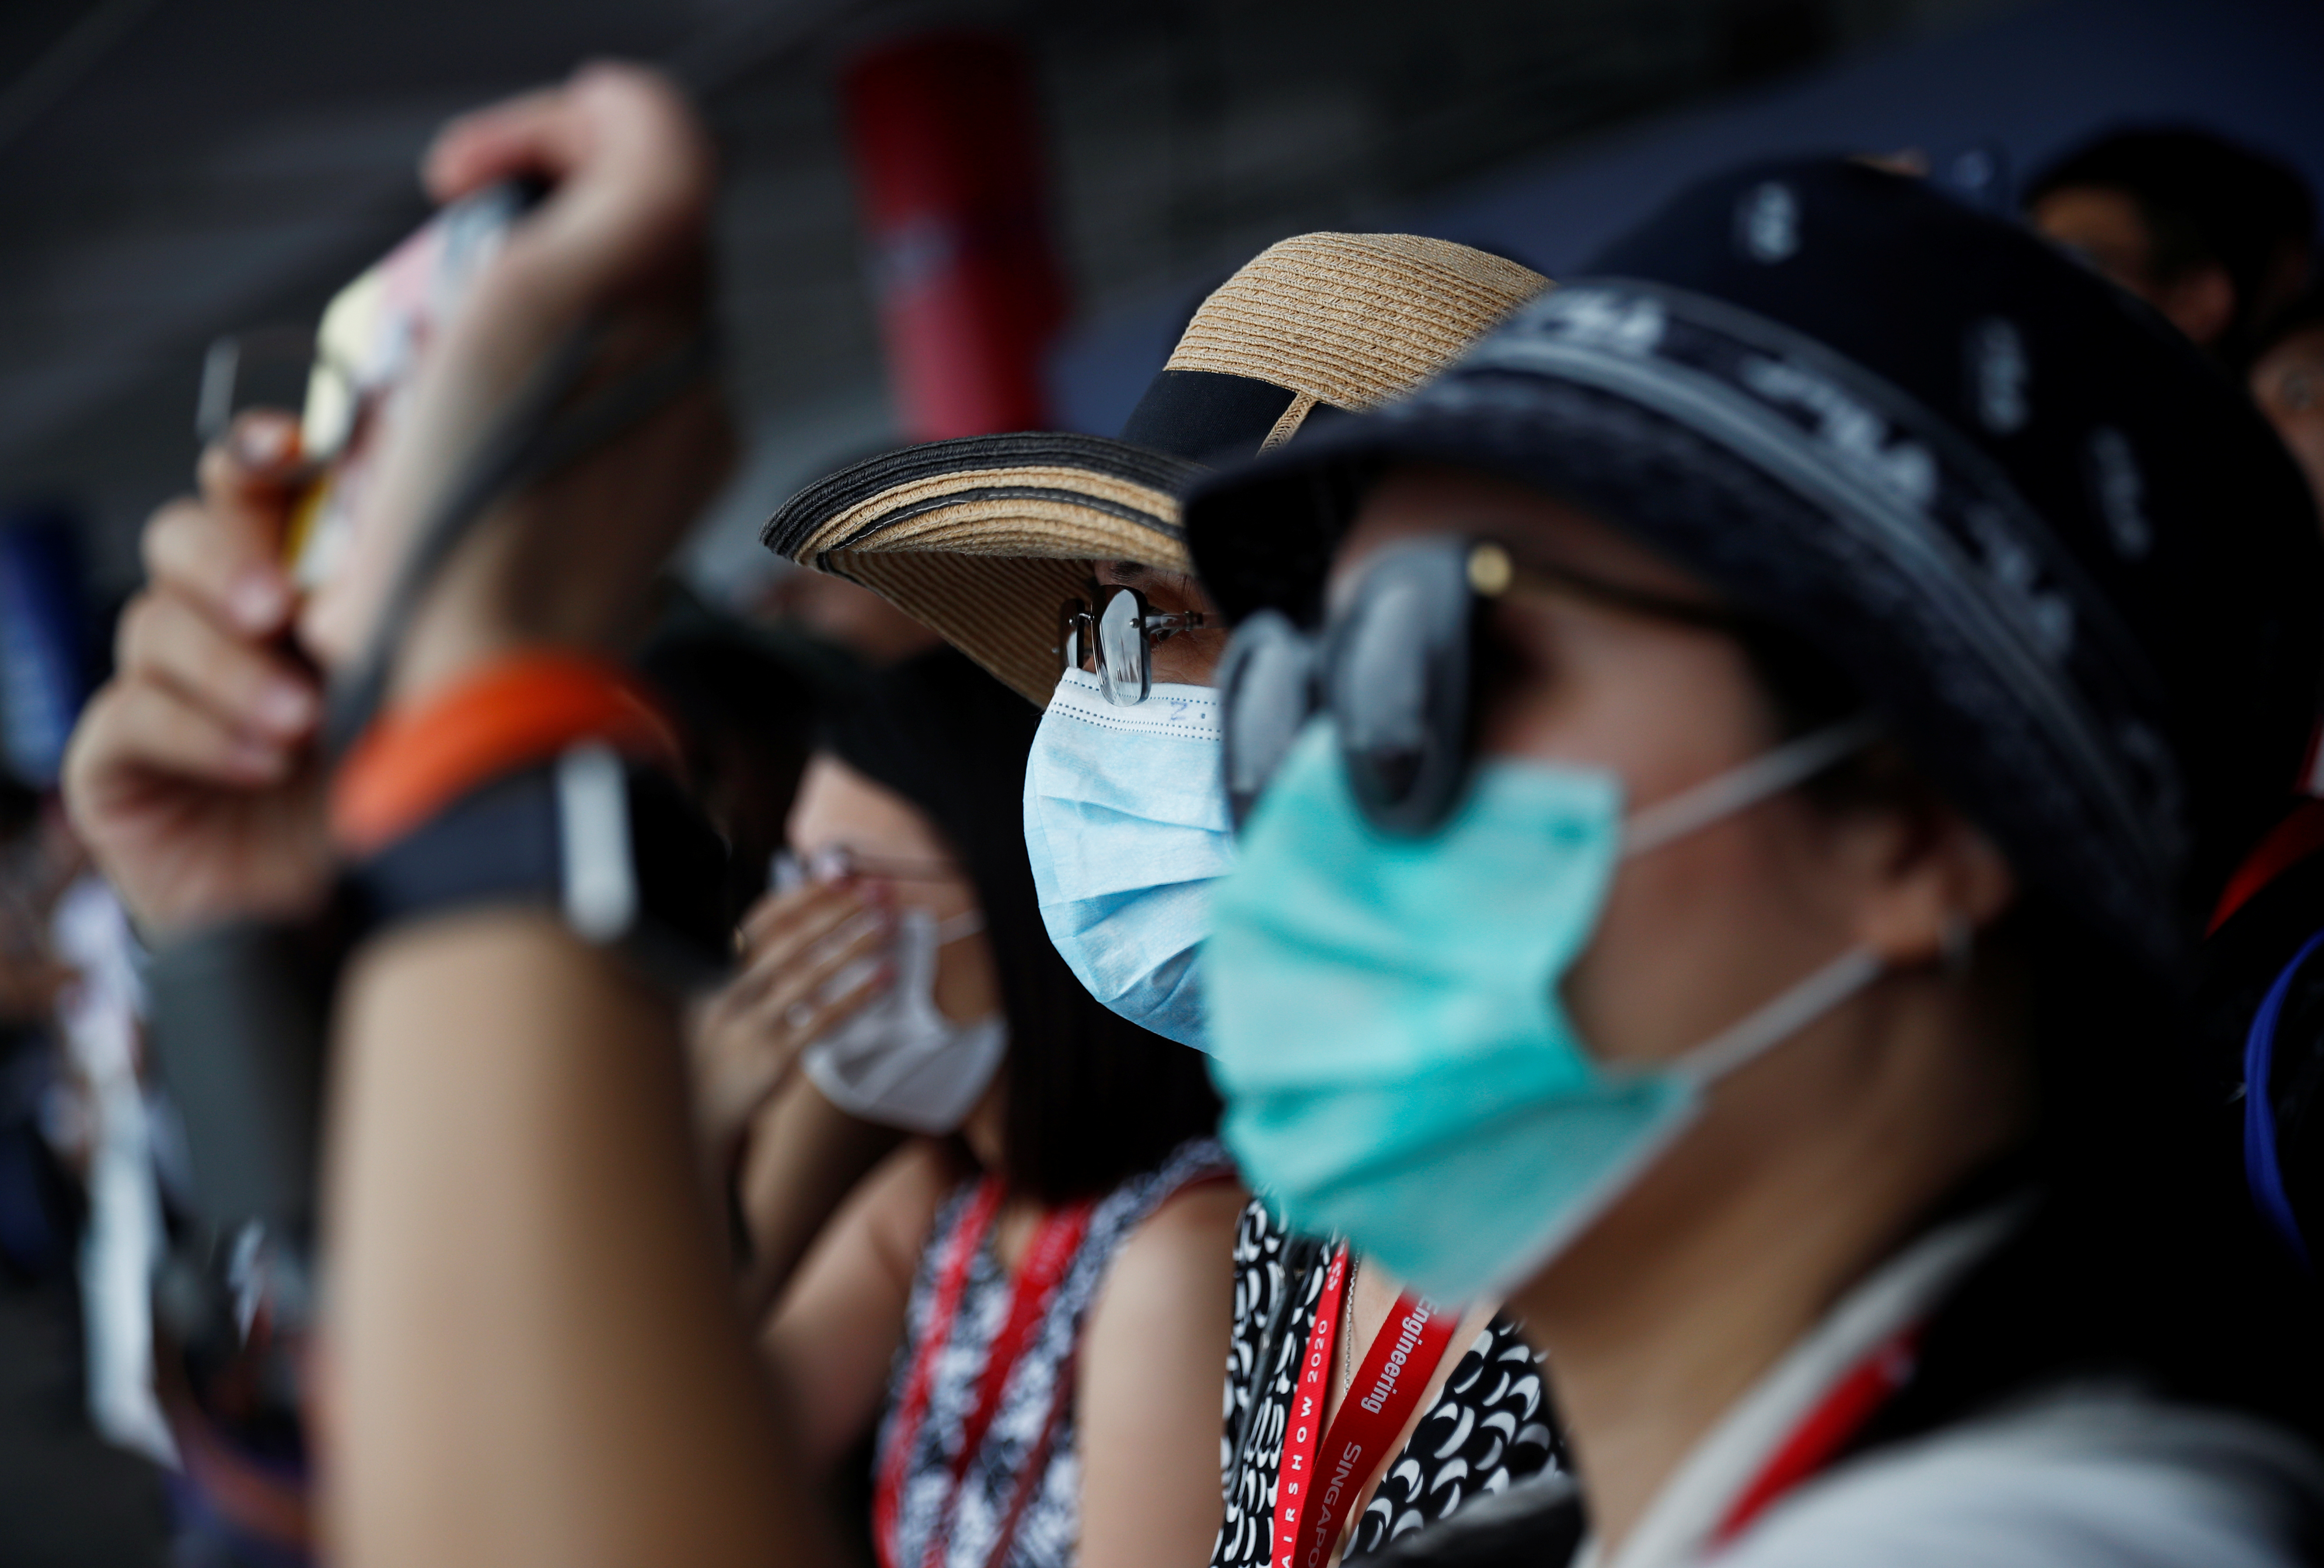 Le coronavirus impacte le Salon aéronautique de Singapour, plus de 70 exposants ont renoncé, les groupes chinois absents